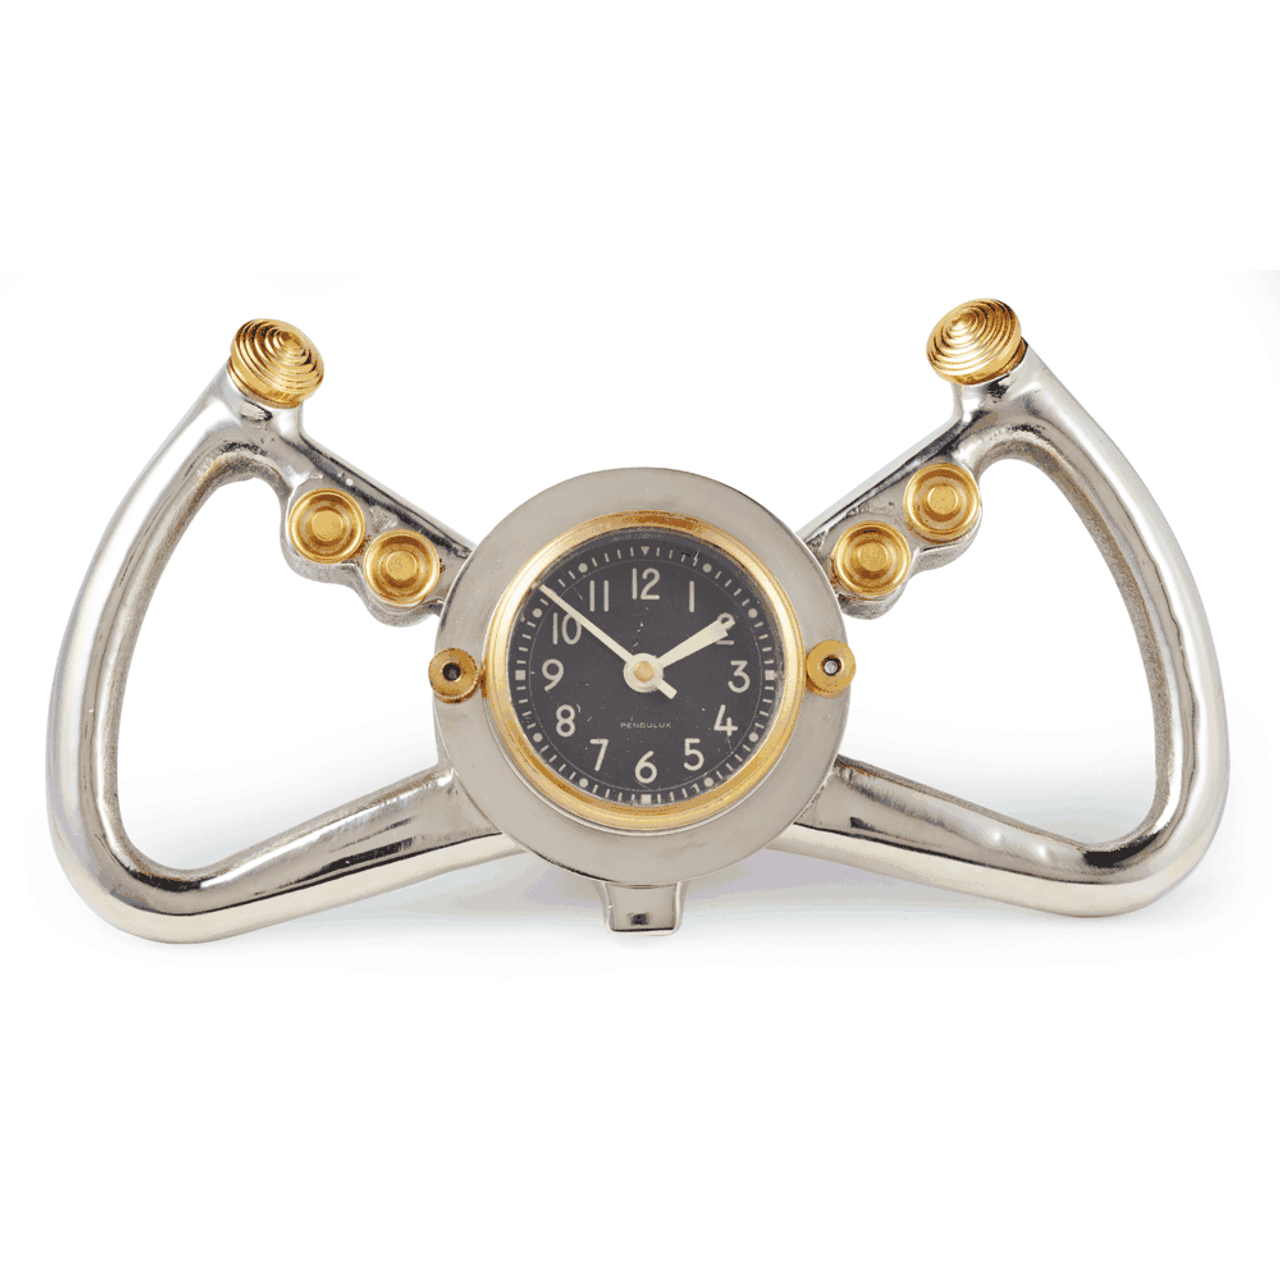 Aircraft Yoke Desk Clock | Aluminum